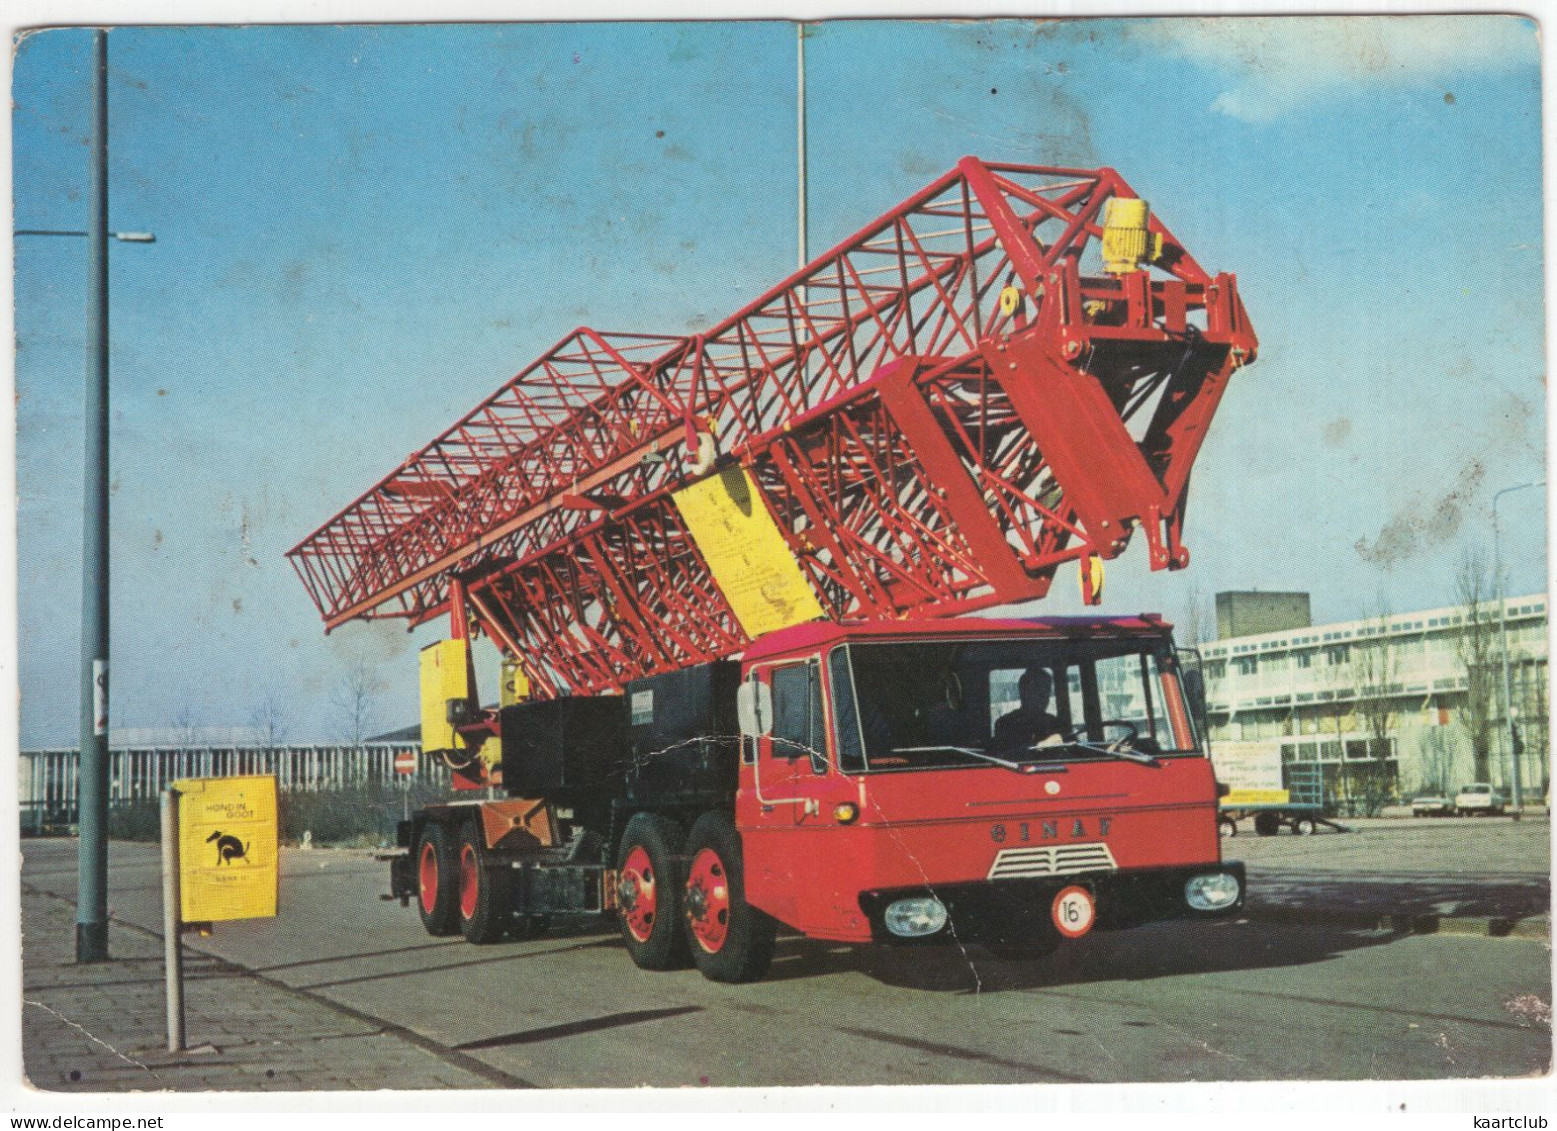 KRØLL K35 LOOPKATKRAAN Op GINAF TRUCKCHASSIS 8x6 - (Niertrasz NV, Bouwmachines, Amsterdam) - Trucks, Vans &  Lorries